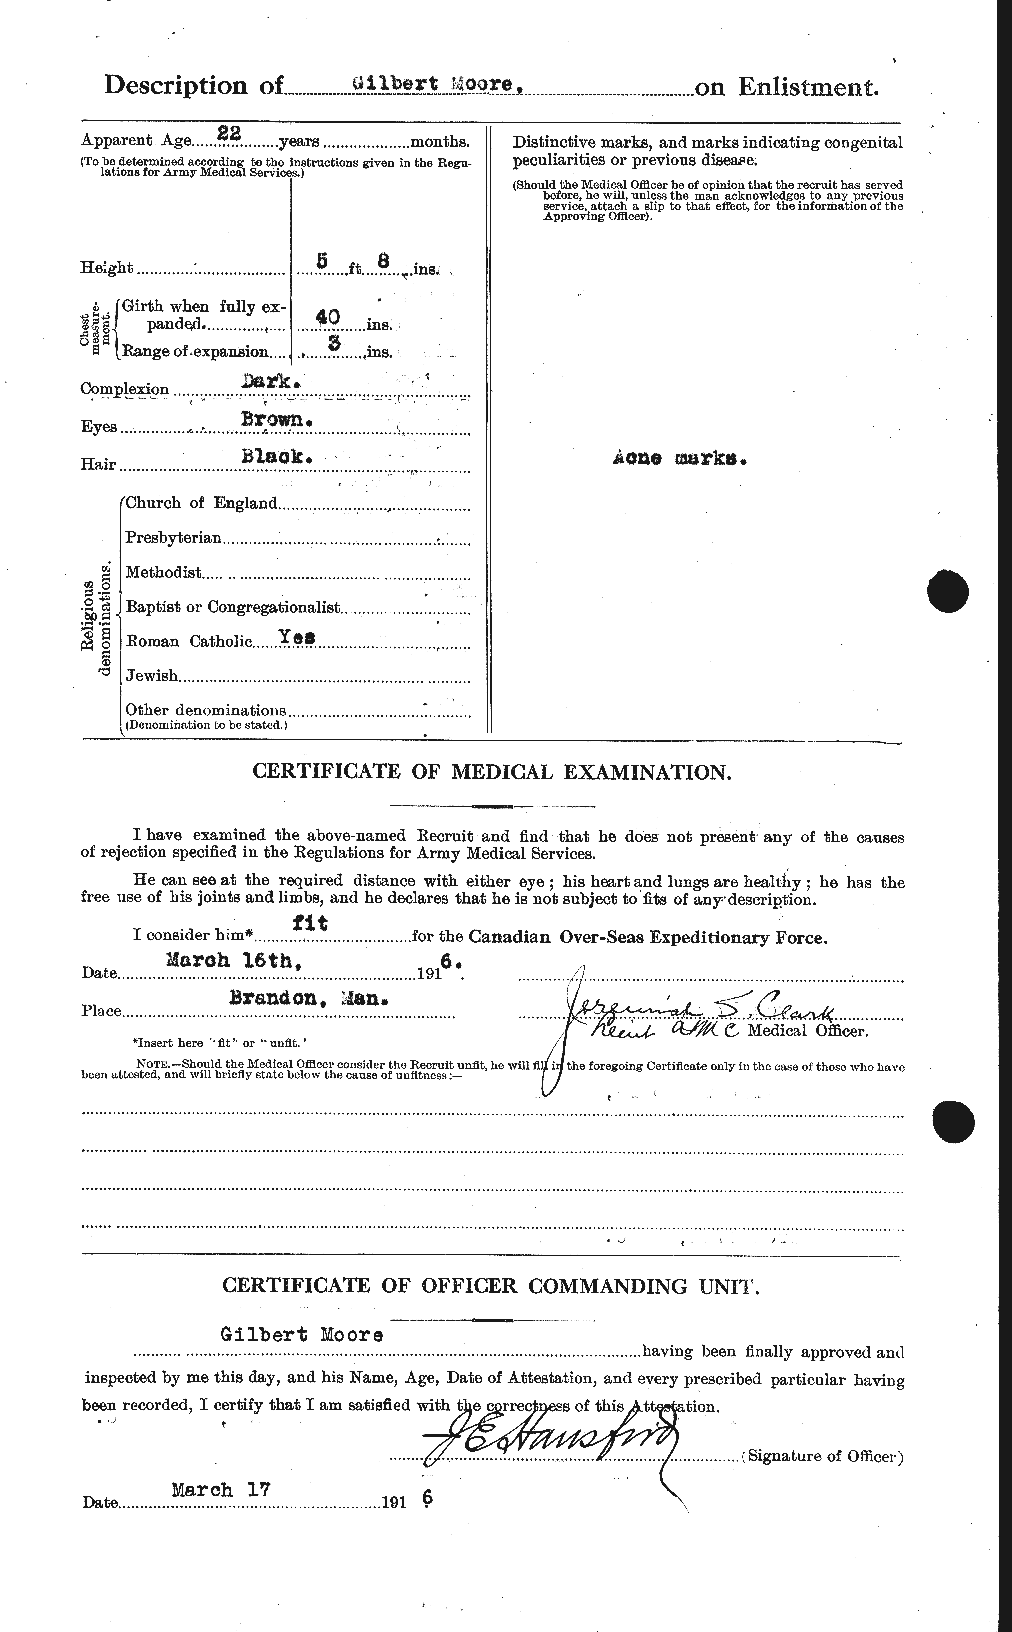 Dossiers du Personnel de la Première Guerre mondiale - CEC 502037b